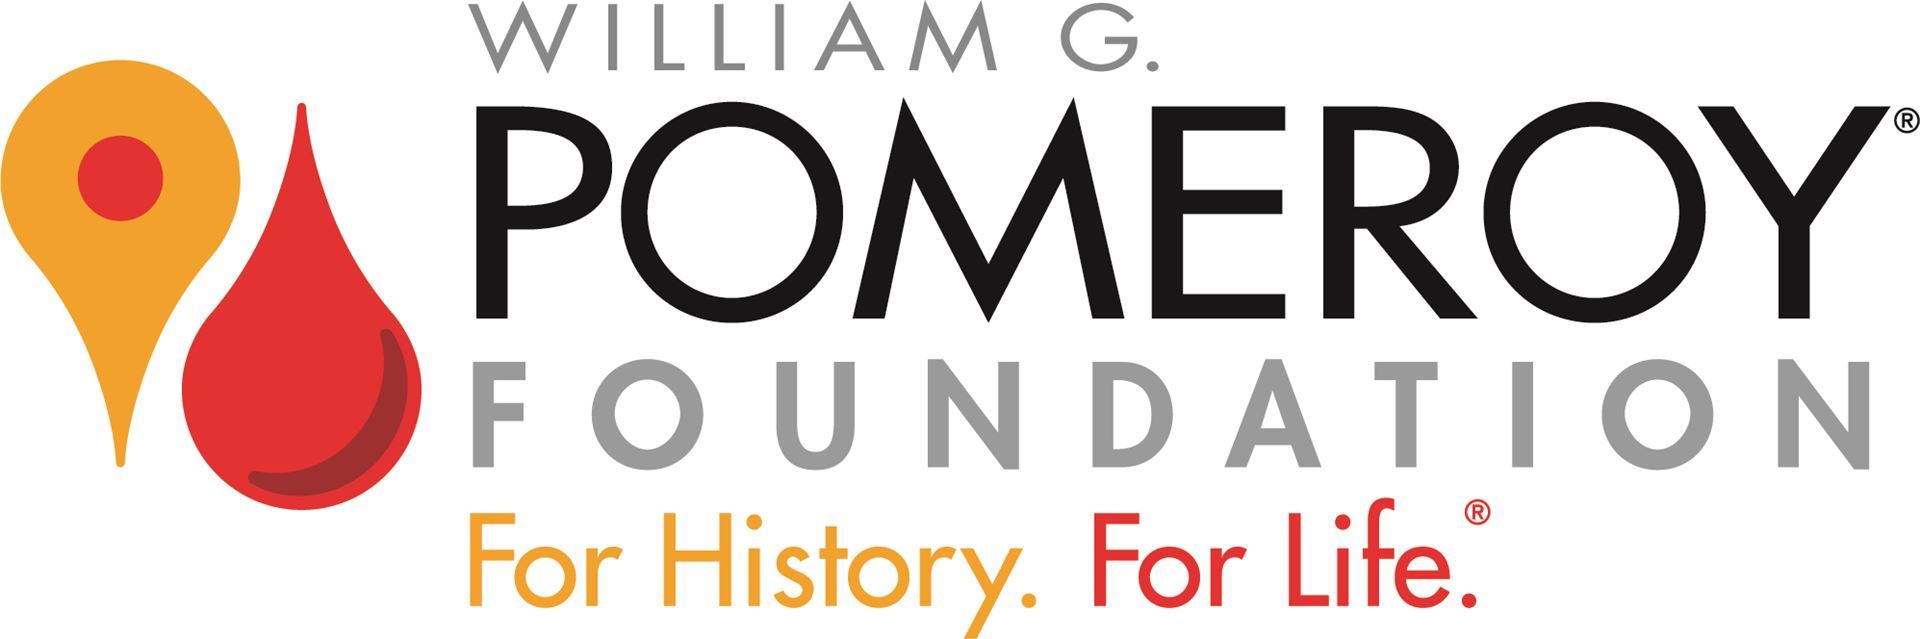 Pomeroy Foundation logo